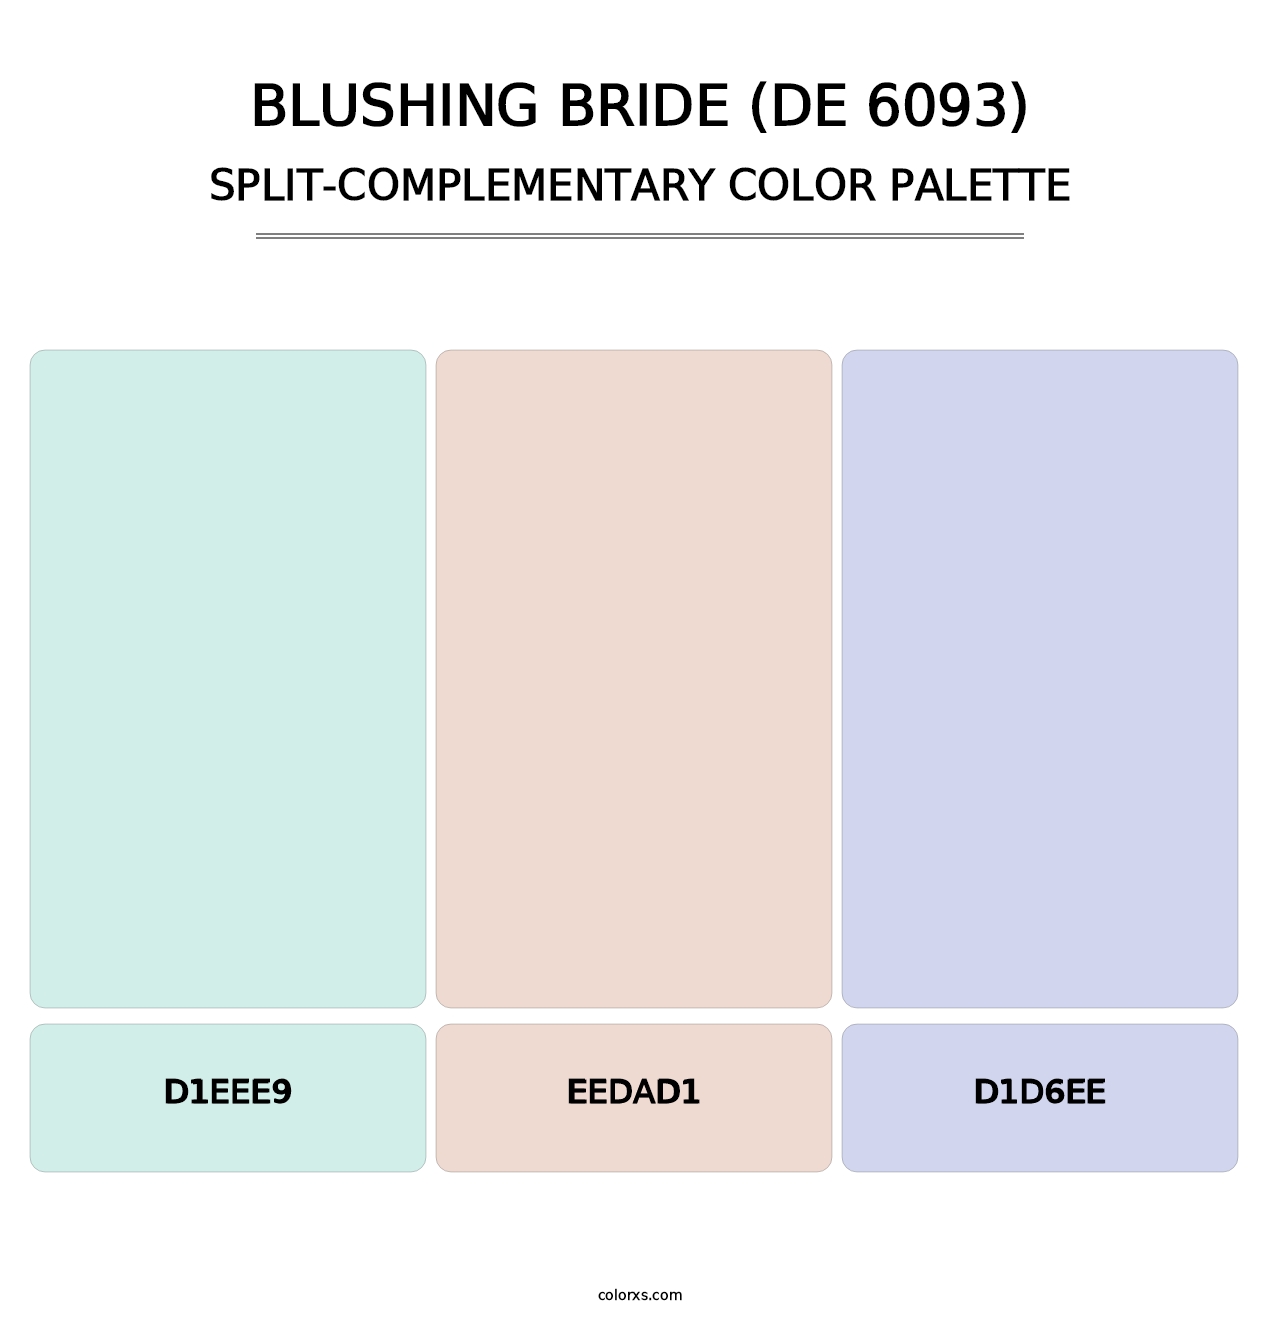 Blushing Bride (DE 6093) - Split-Complementary Color Palette